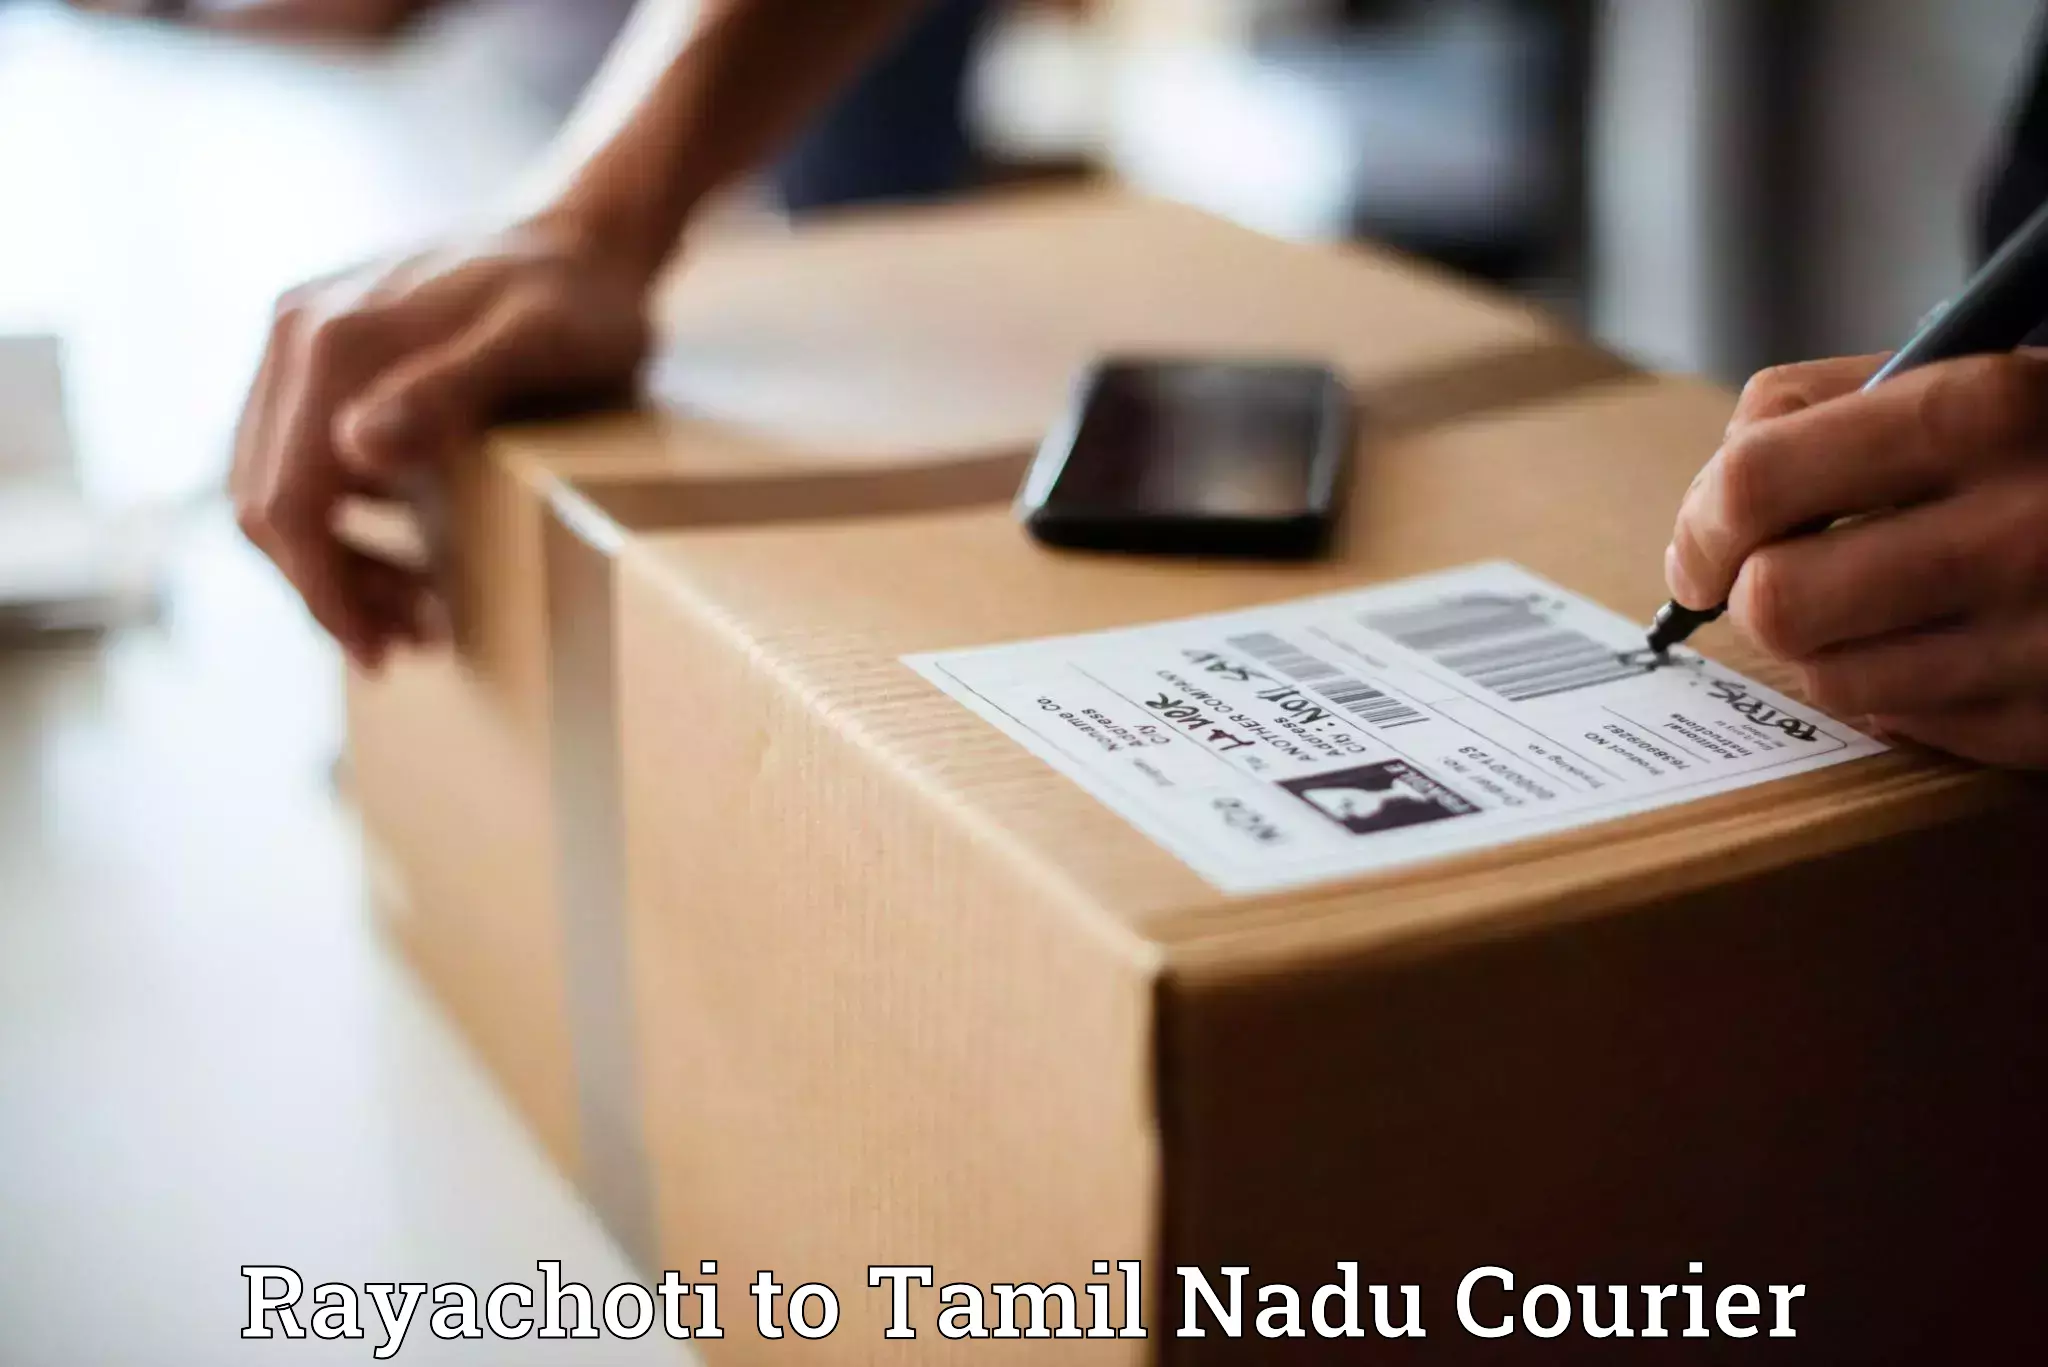 International logistics solutions Rayachoti to Tamil Nadu